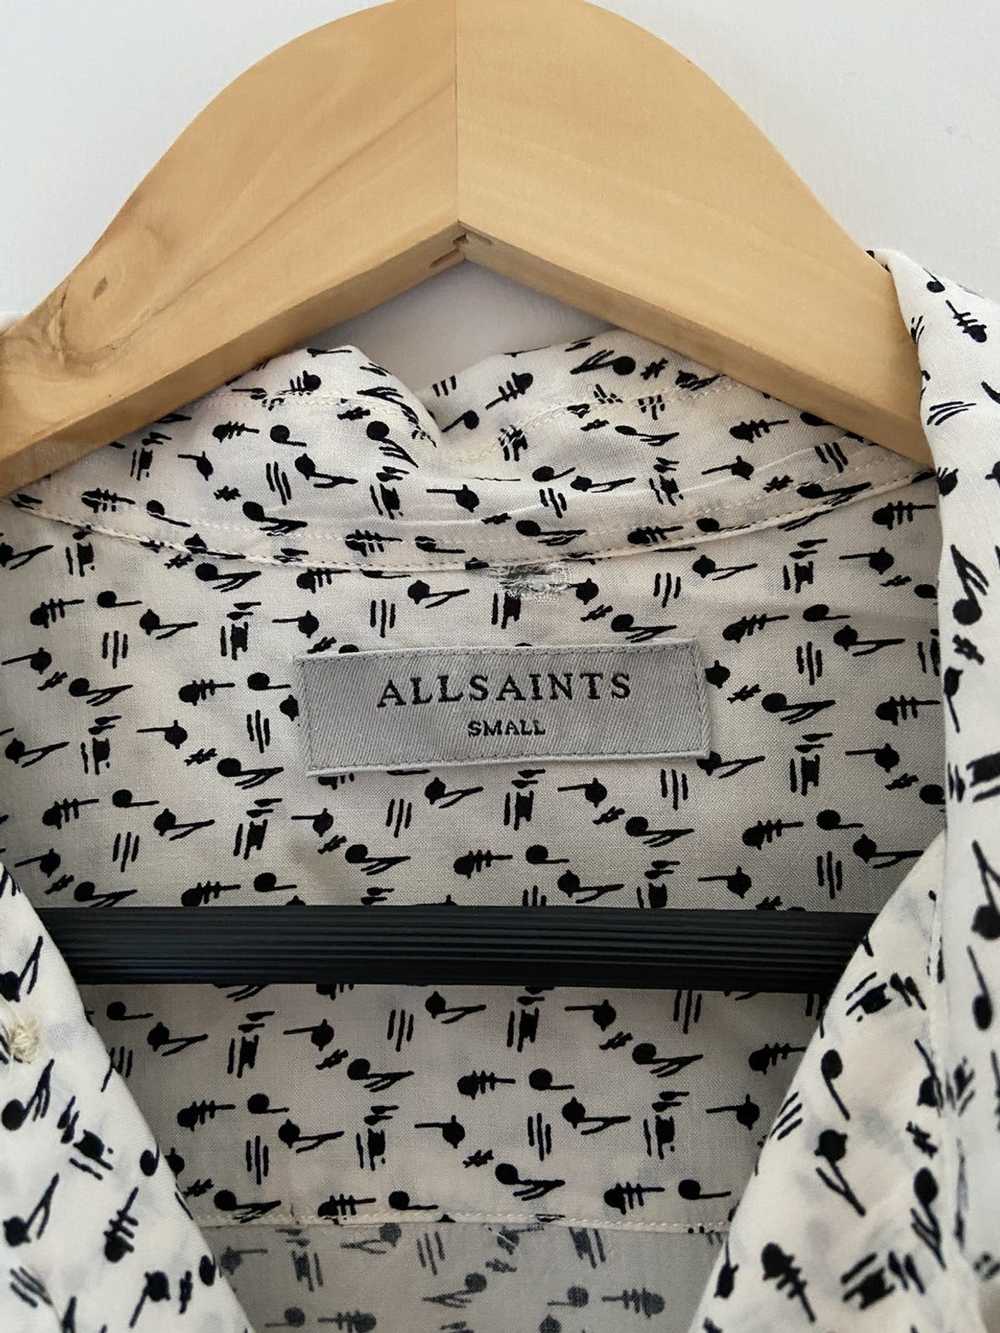 Allsaints Allsaints viscose shirt - image 3